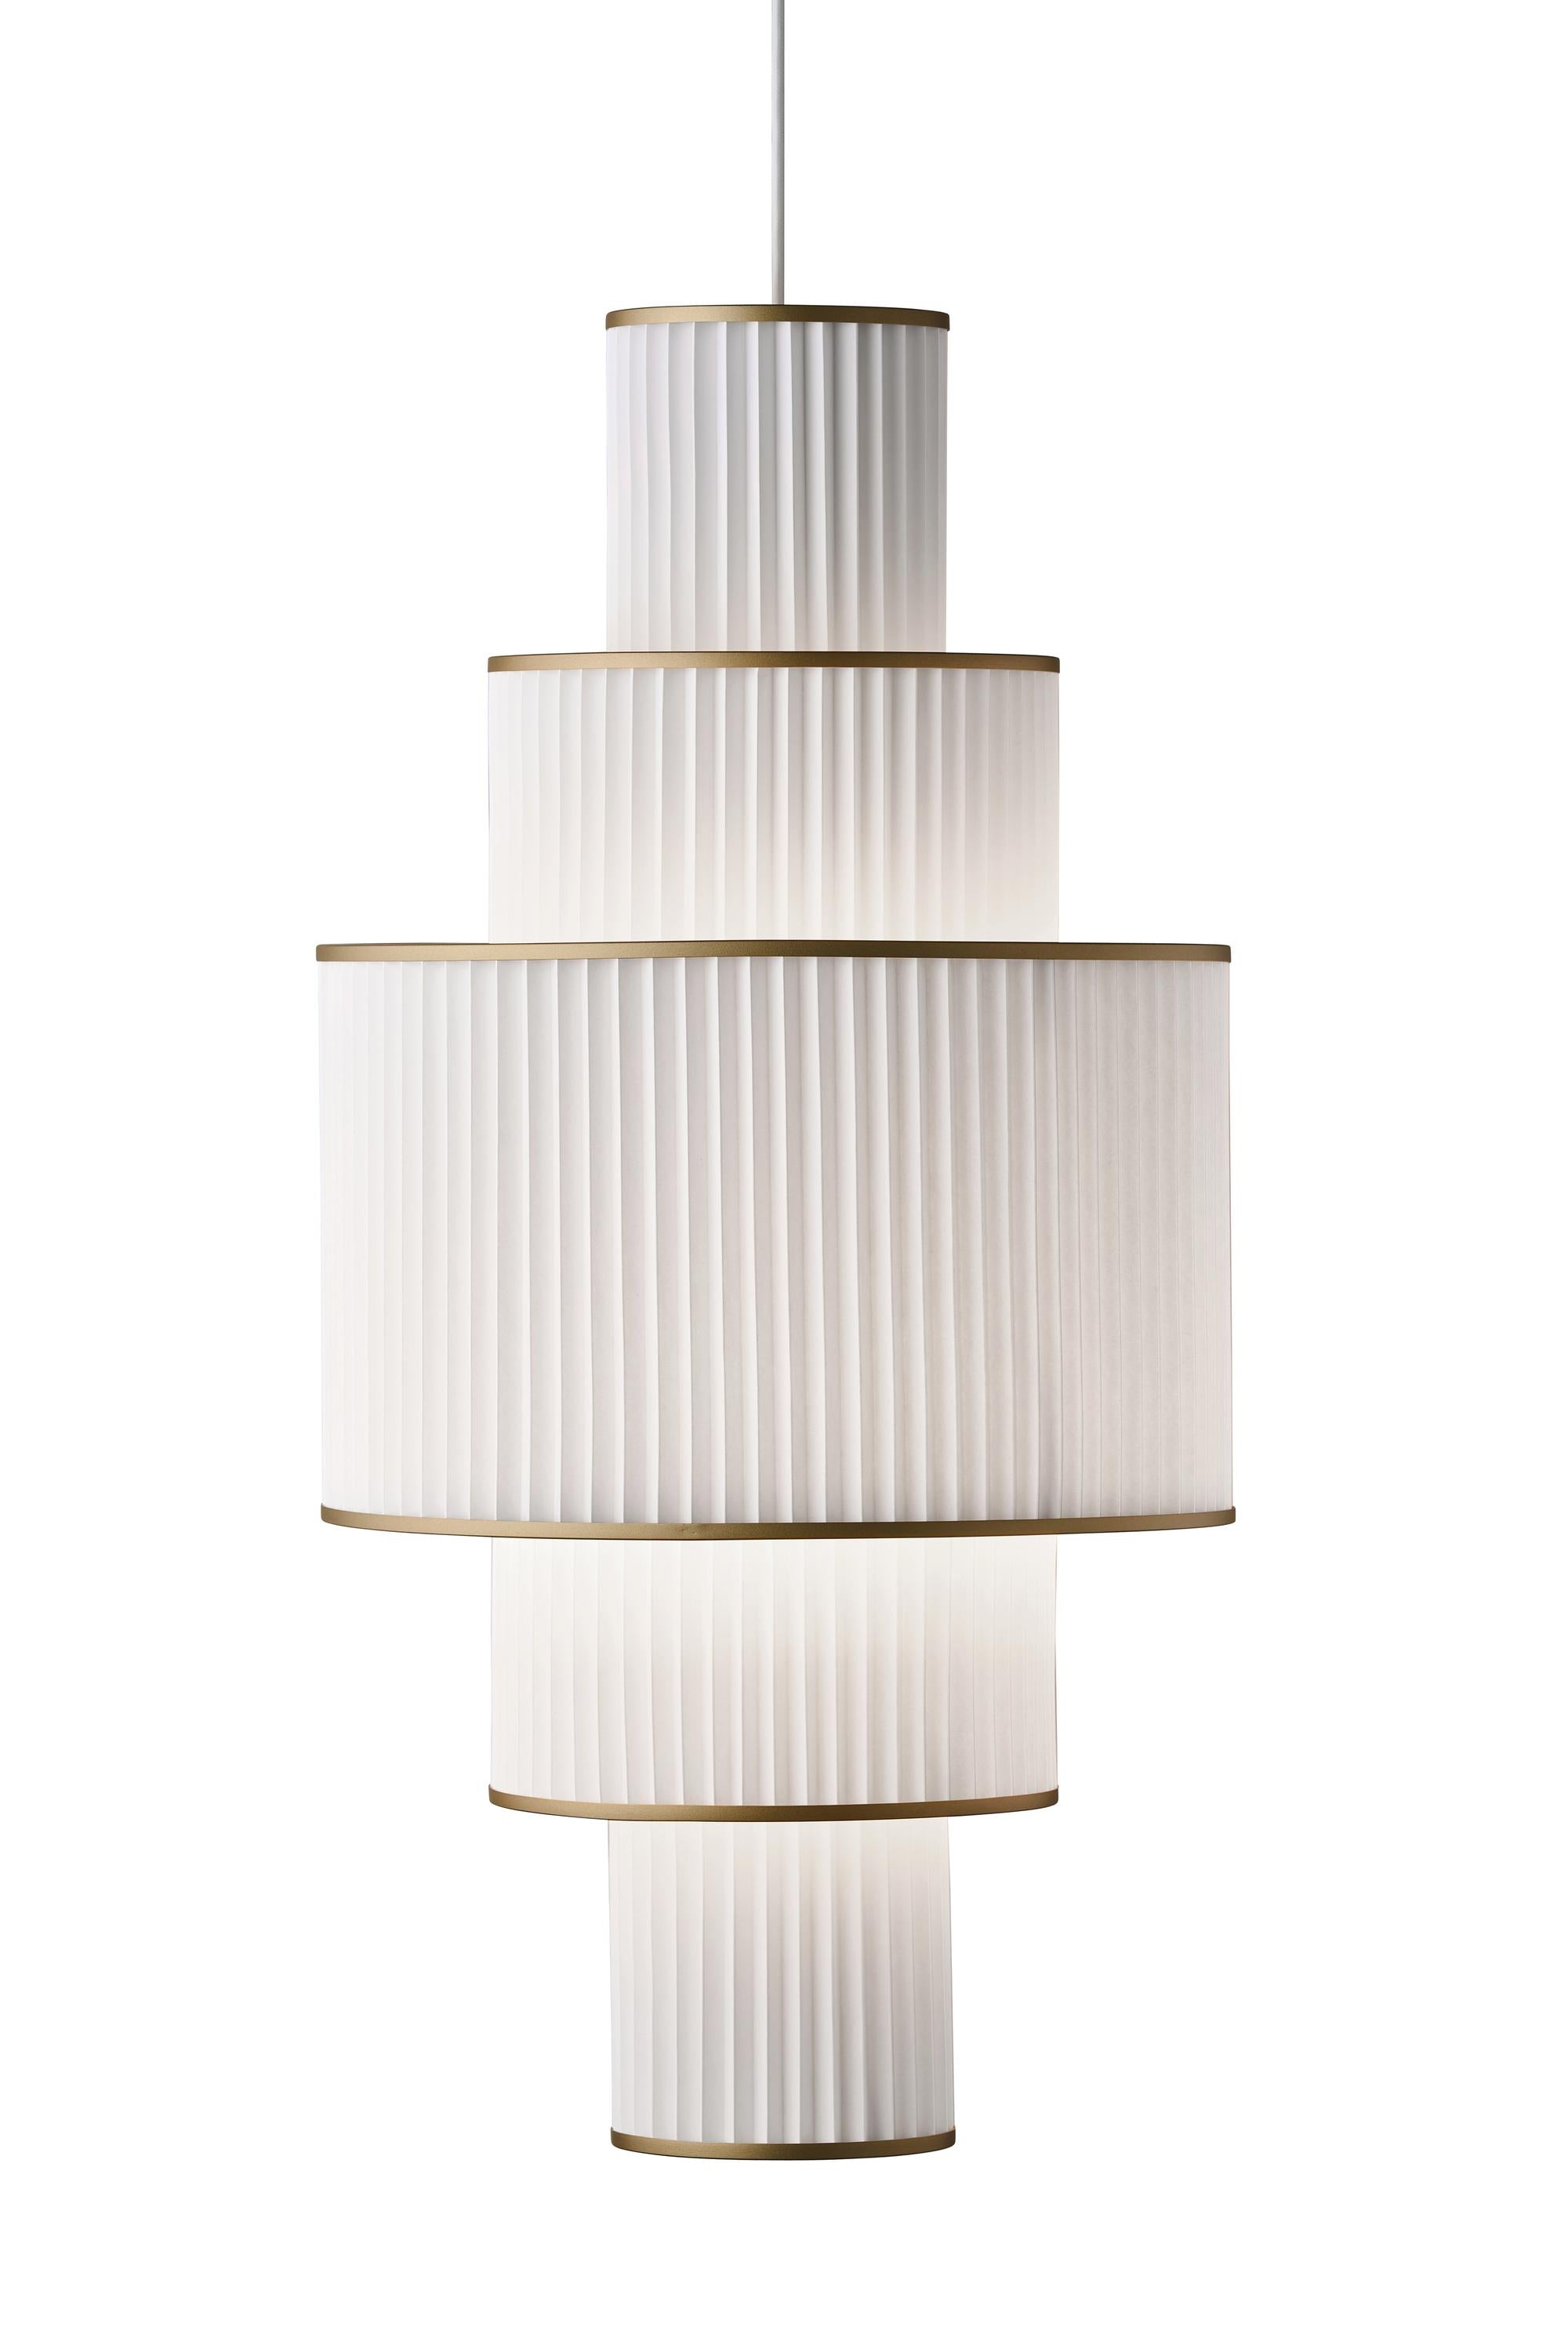 Le Klint PLIVELLO SUSPENSION lampe dorée / blanc avec 5 nuances (S M L M S)